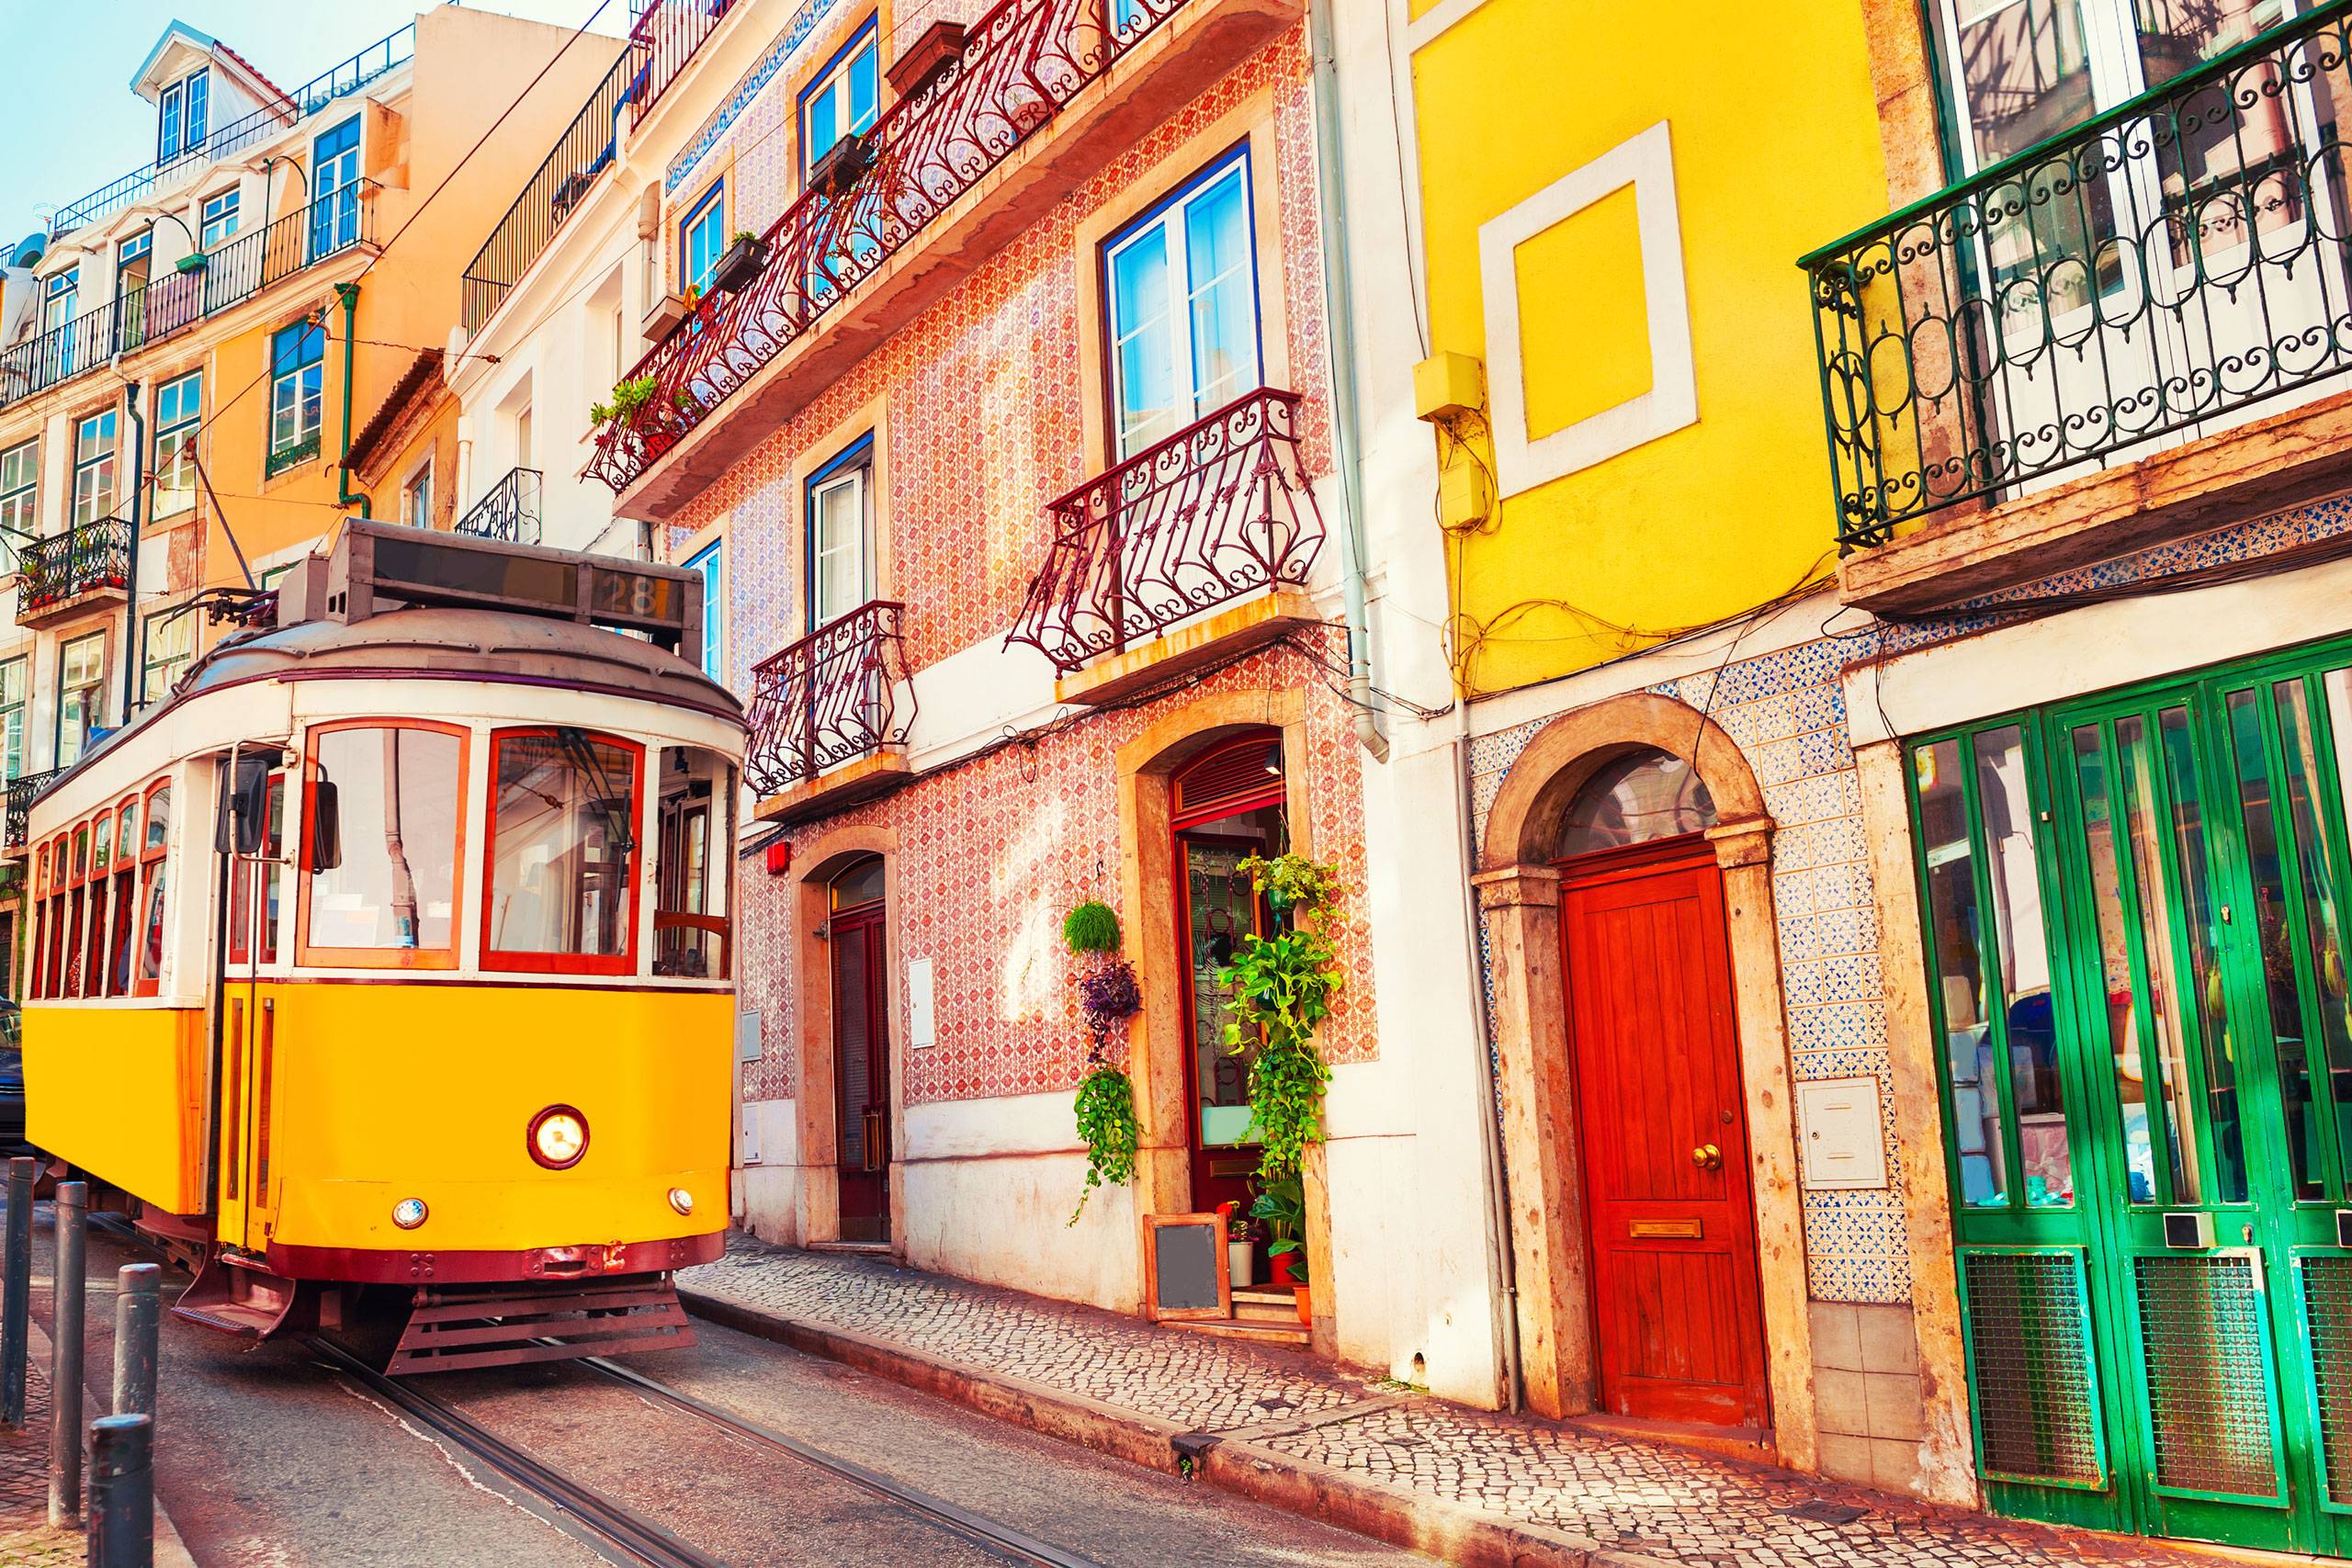 Ocupações ilegais aumentam em Lisboa porque é difícil encontrar casa